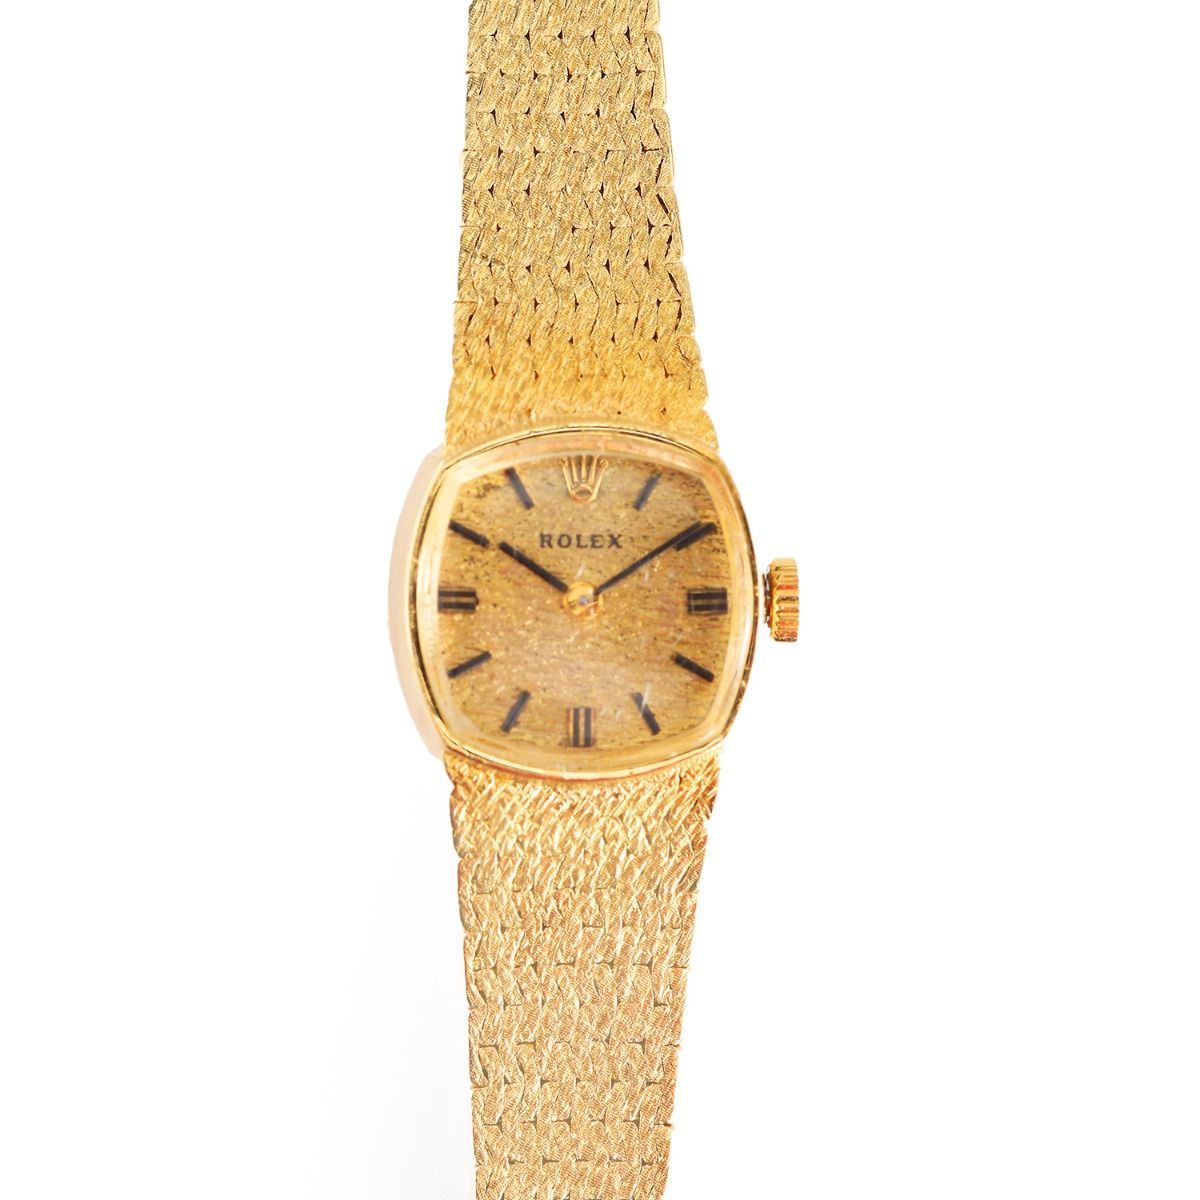 Vintage 14K Yellow Gold Rolex Watch Circa